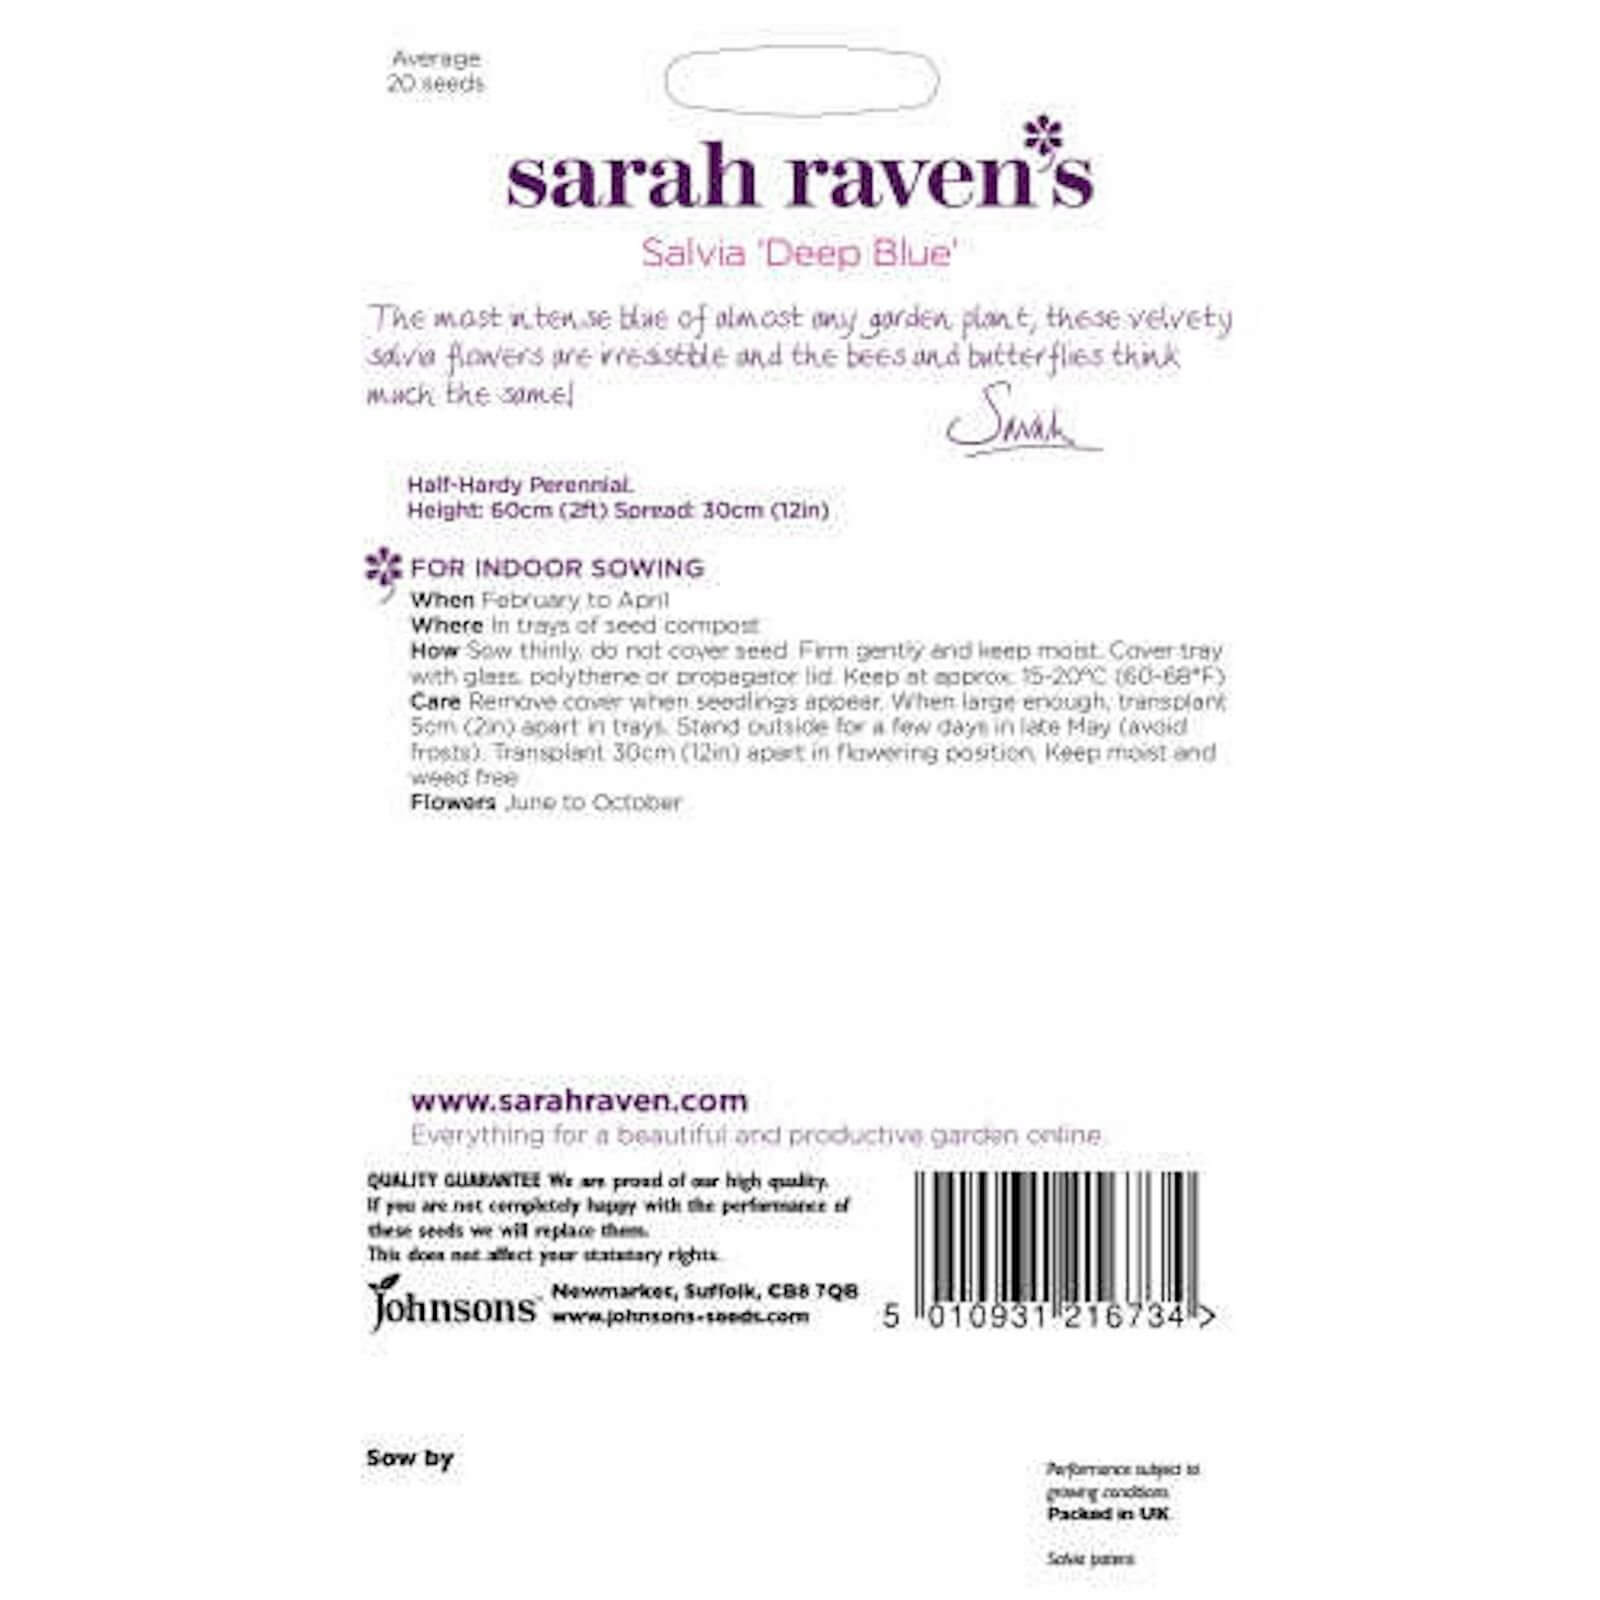 Sarah Ravens Salvia Deep Blue Seeds